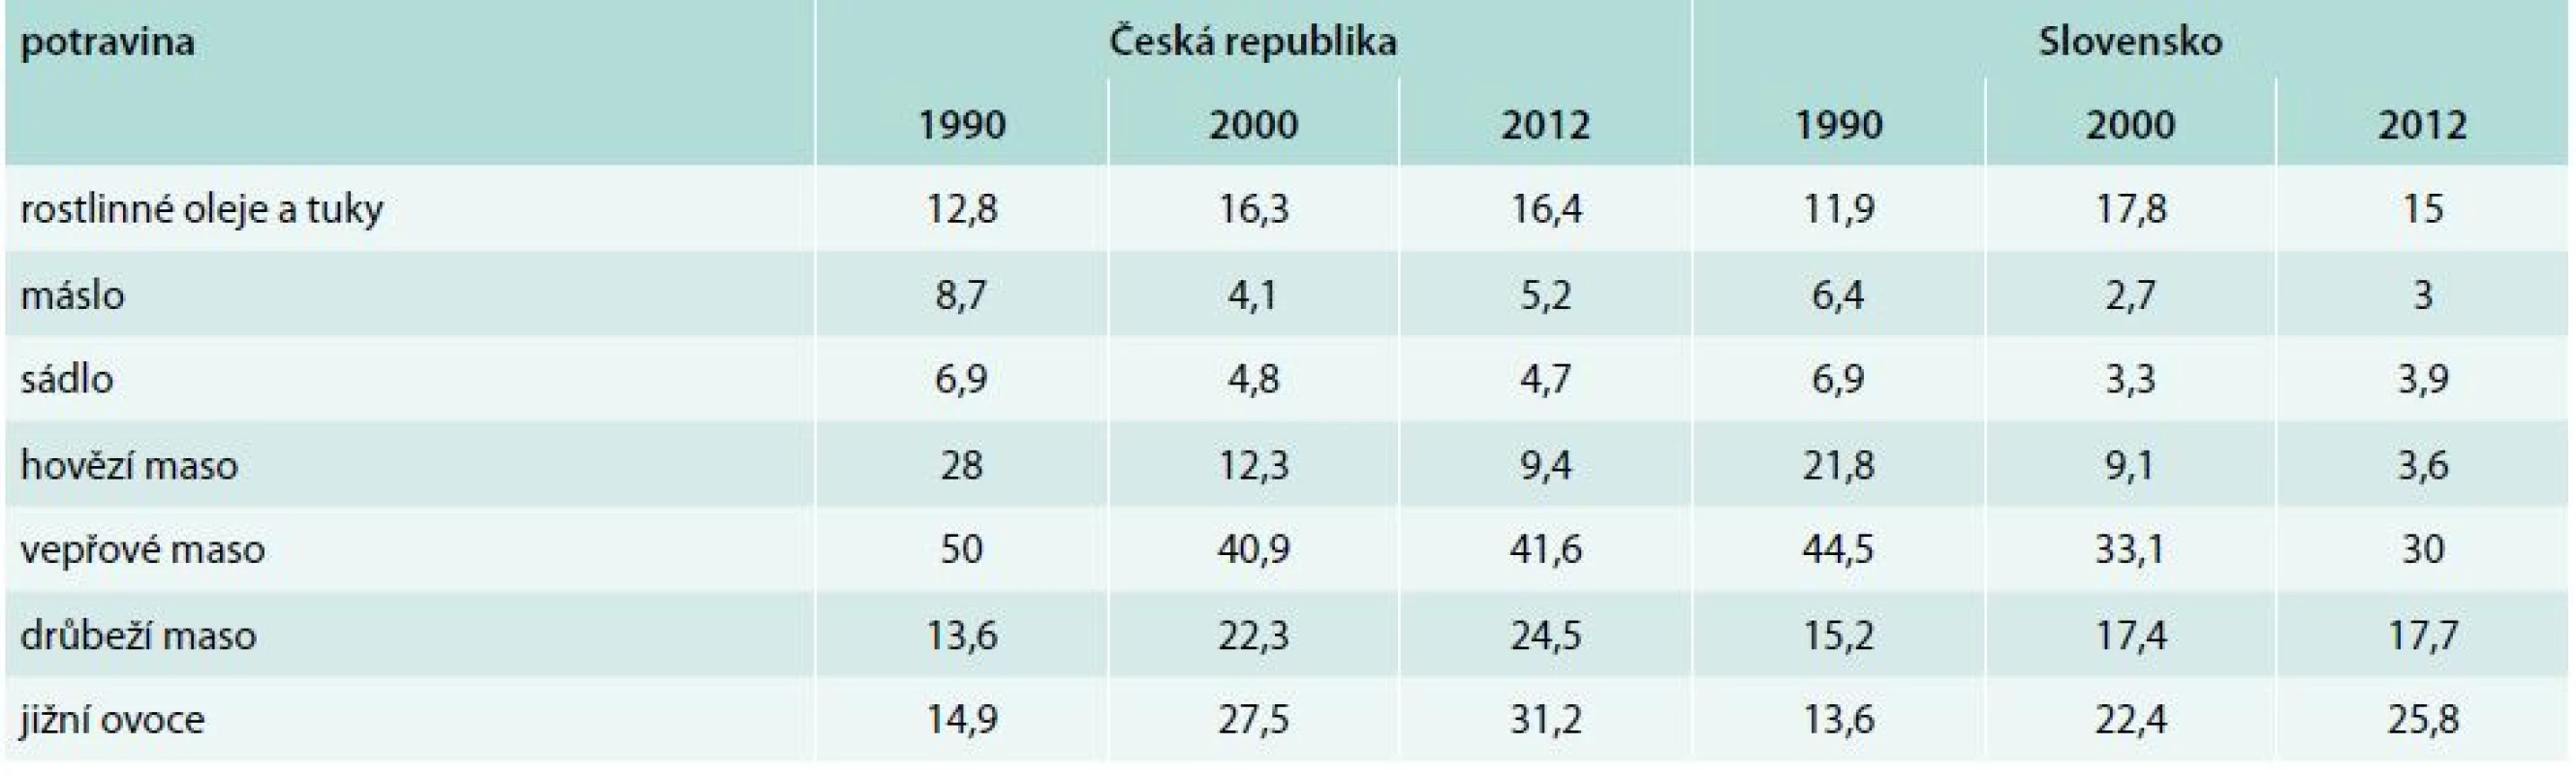 Spotřeba vybraných potravin v České republice a na Slovensku (kg/osoba/rok). Upraveno podle [12,13]